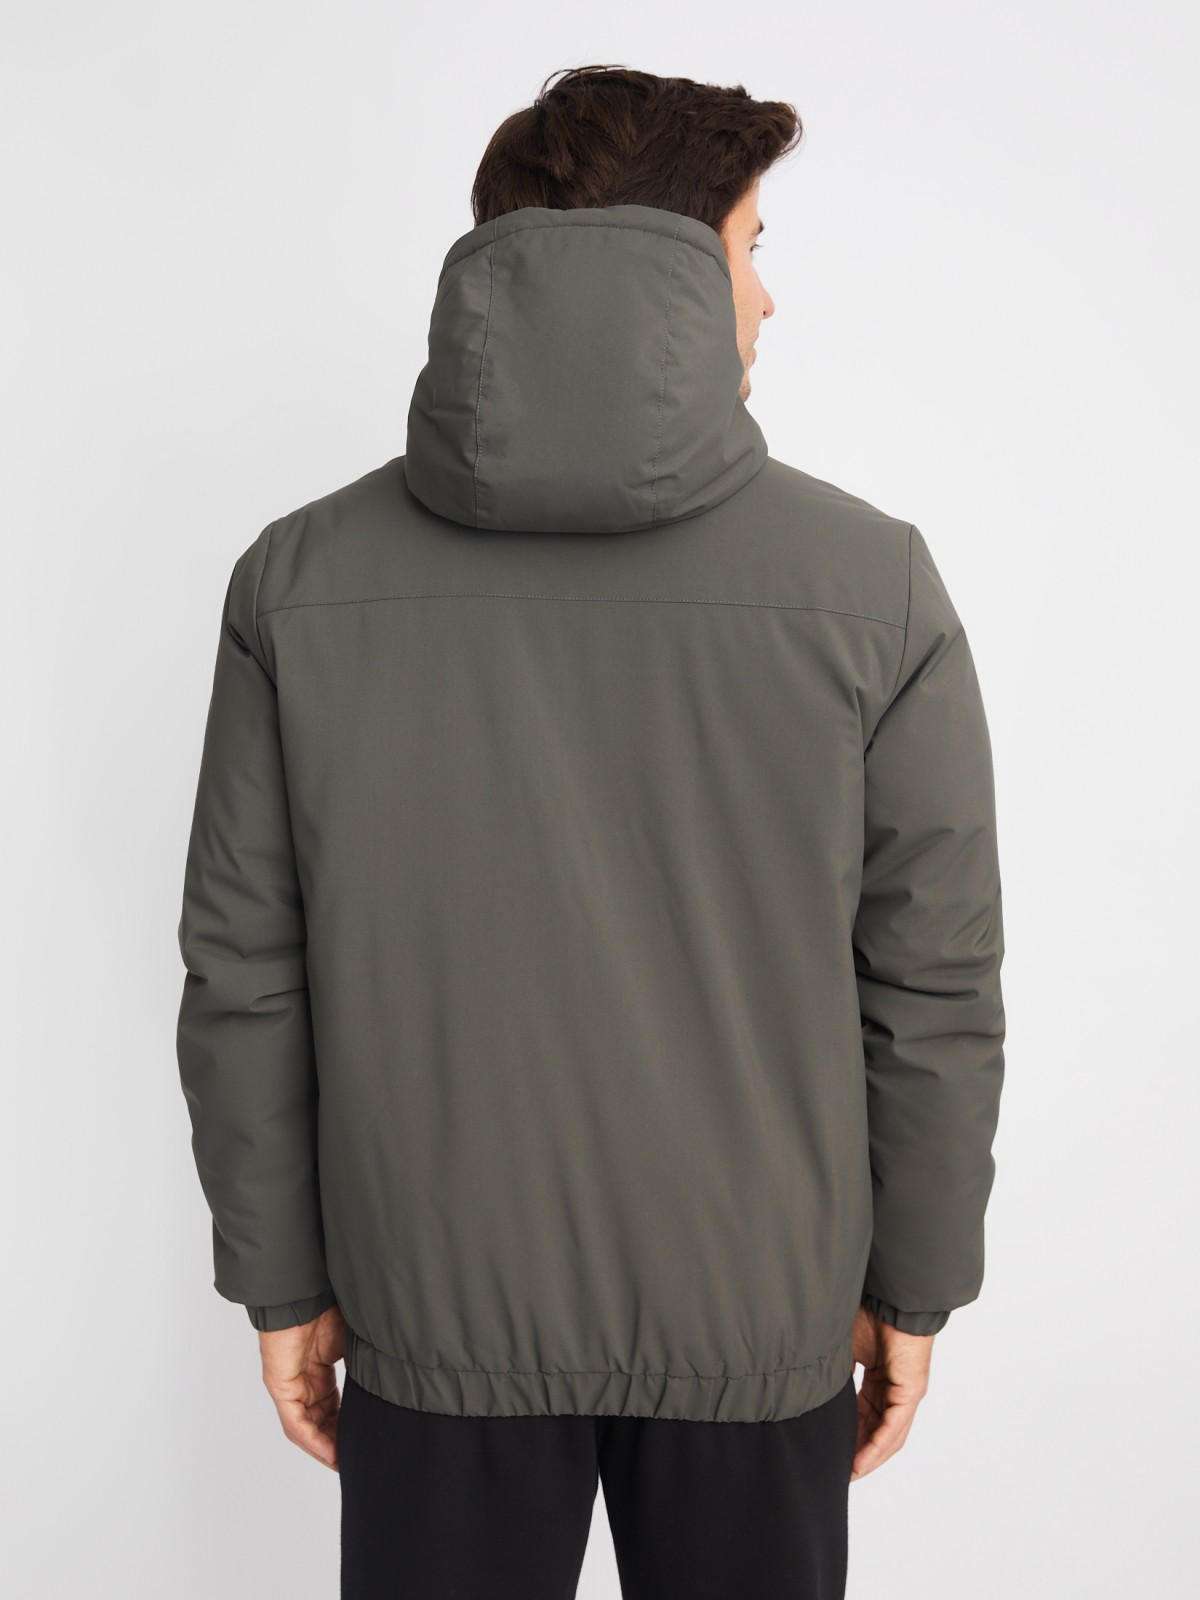 Тёплая куртка с капюшоном на синтепоне zolla 014125102204, цвет хаки, размер M - фото 6